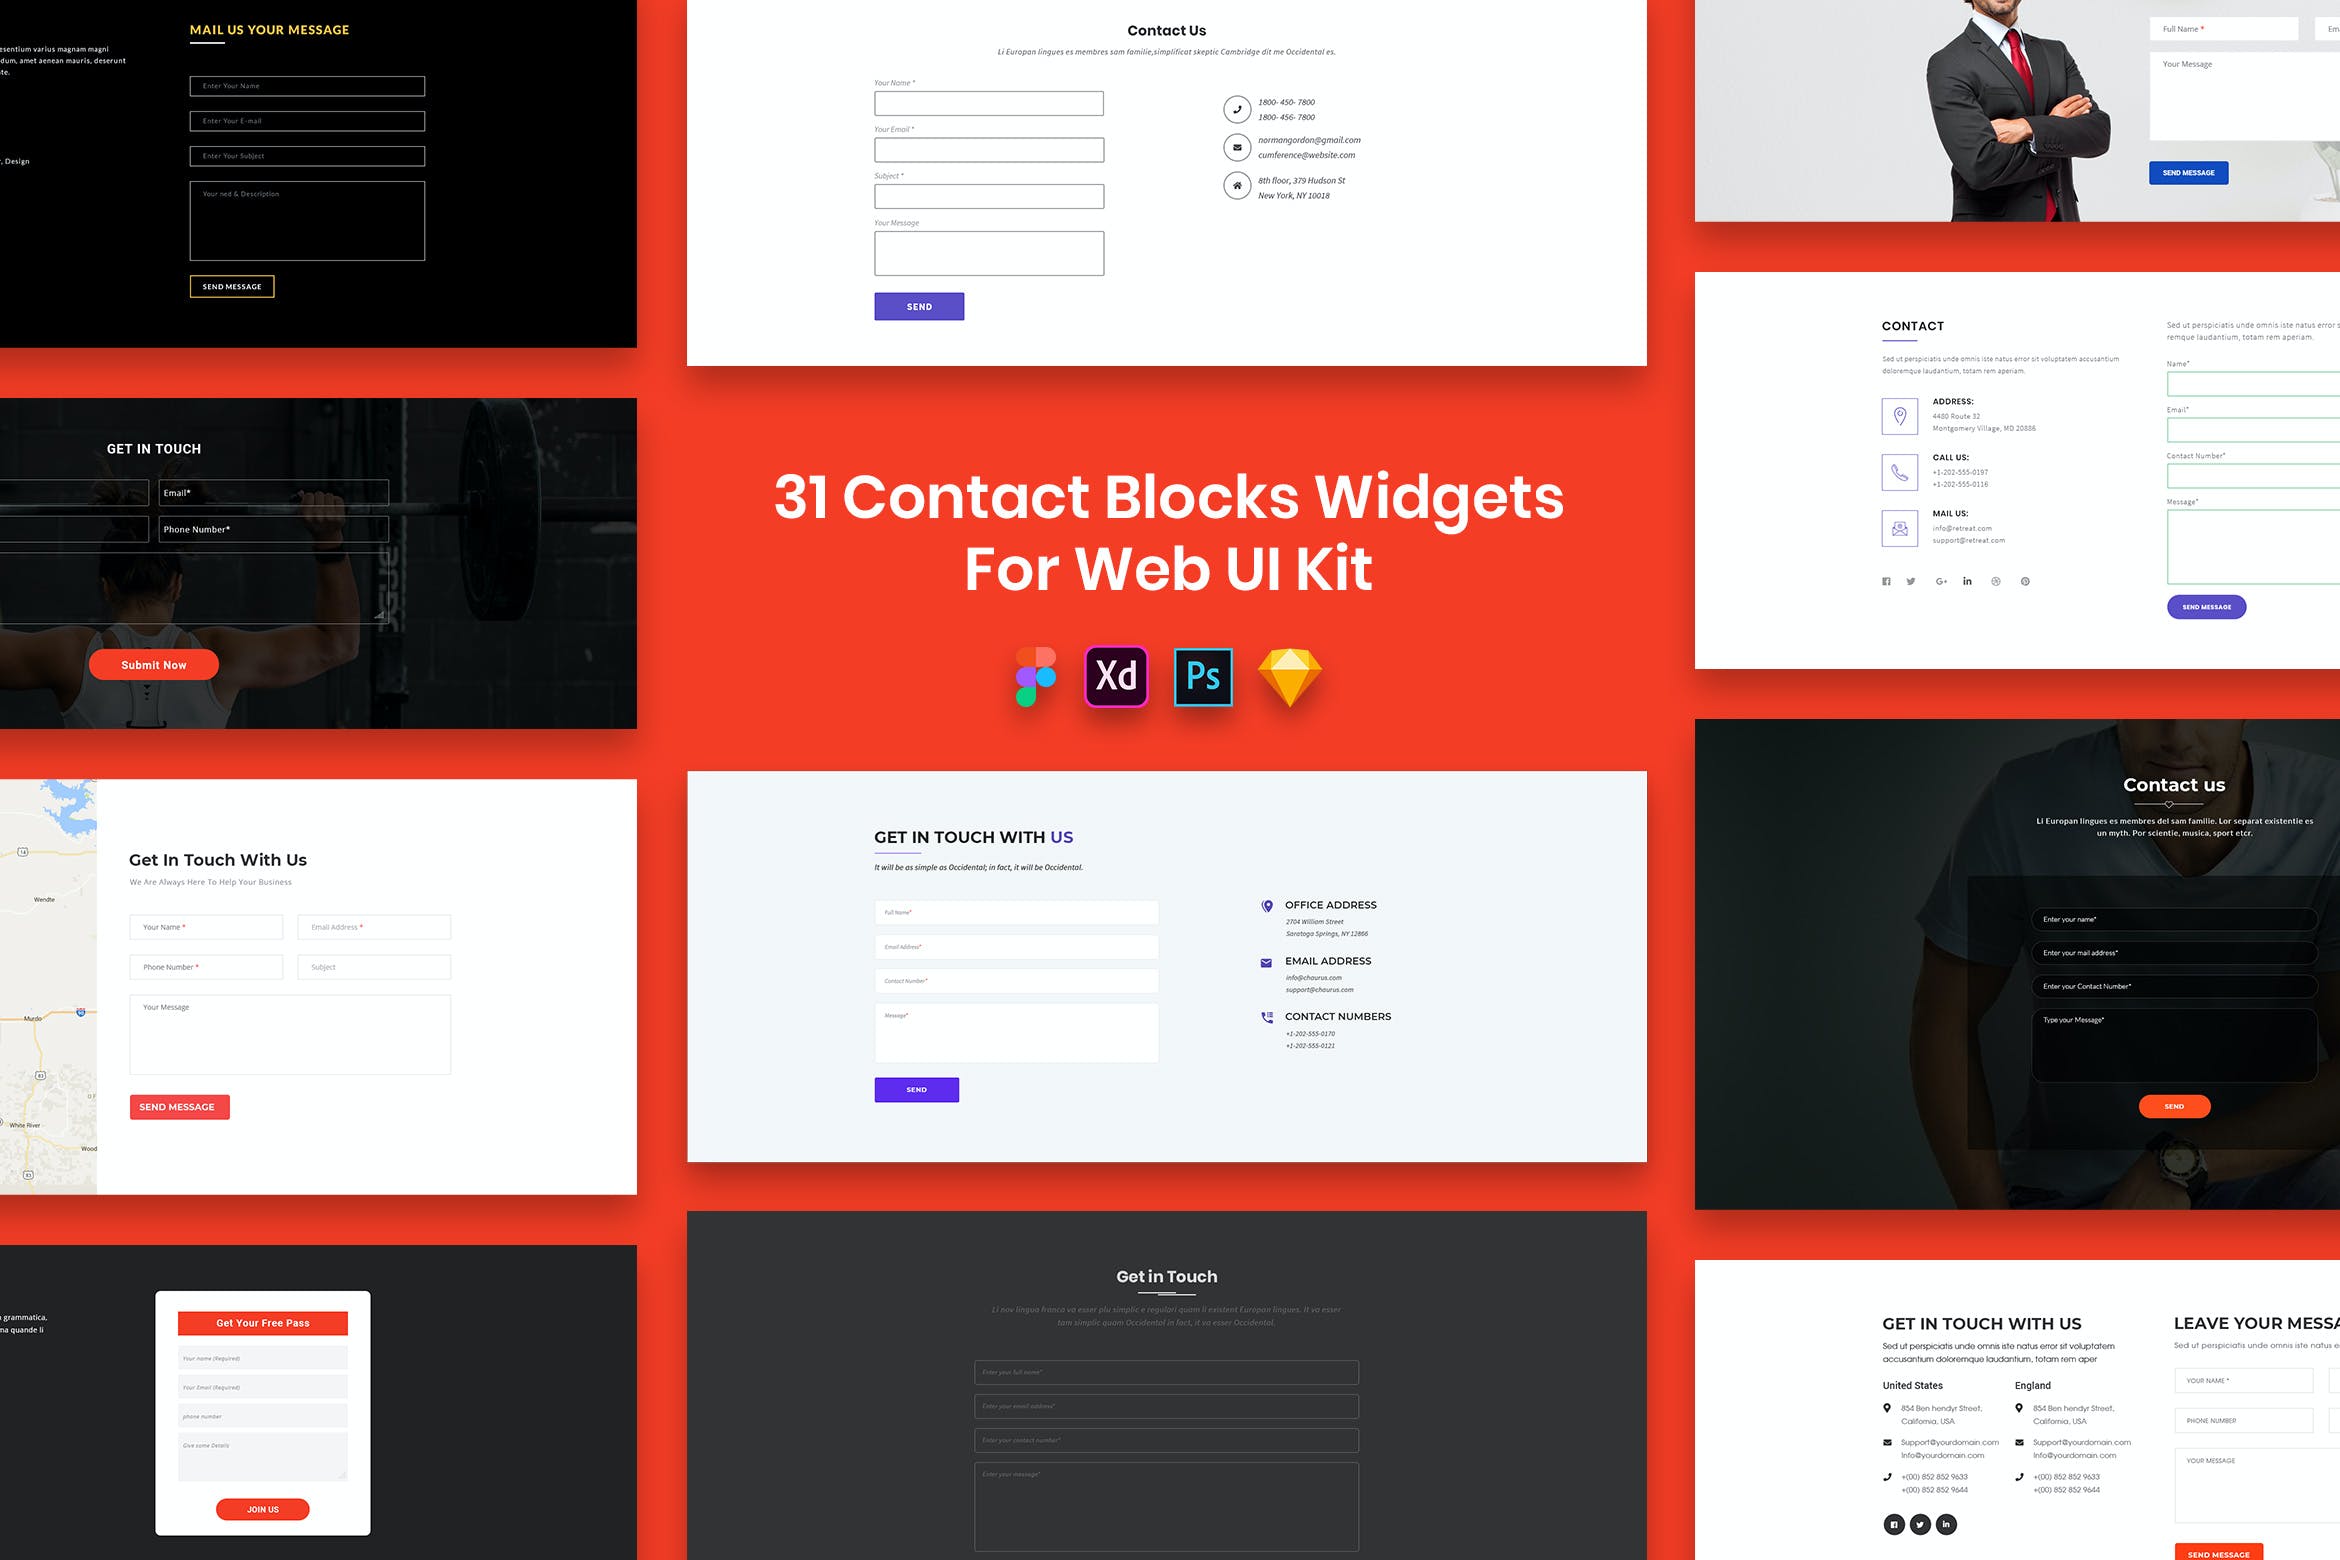 联系我们网页组件UI设计模板 31 Contact Blocks Widgets for Web UI Kit设计素材模板